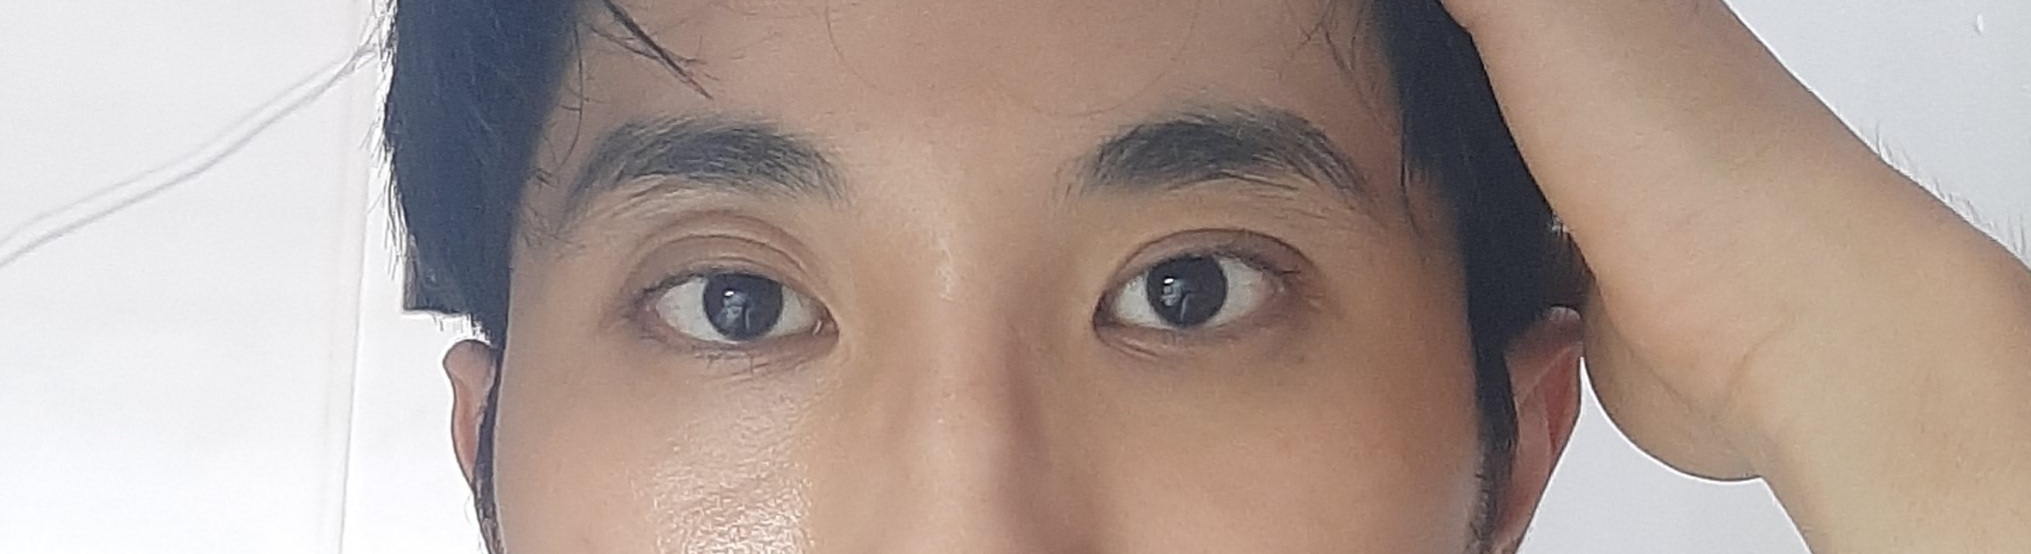 Vấn đề về mắt